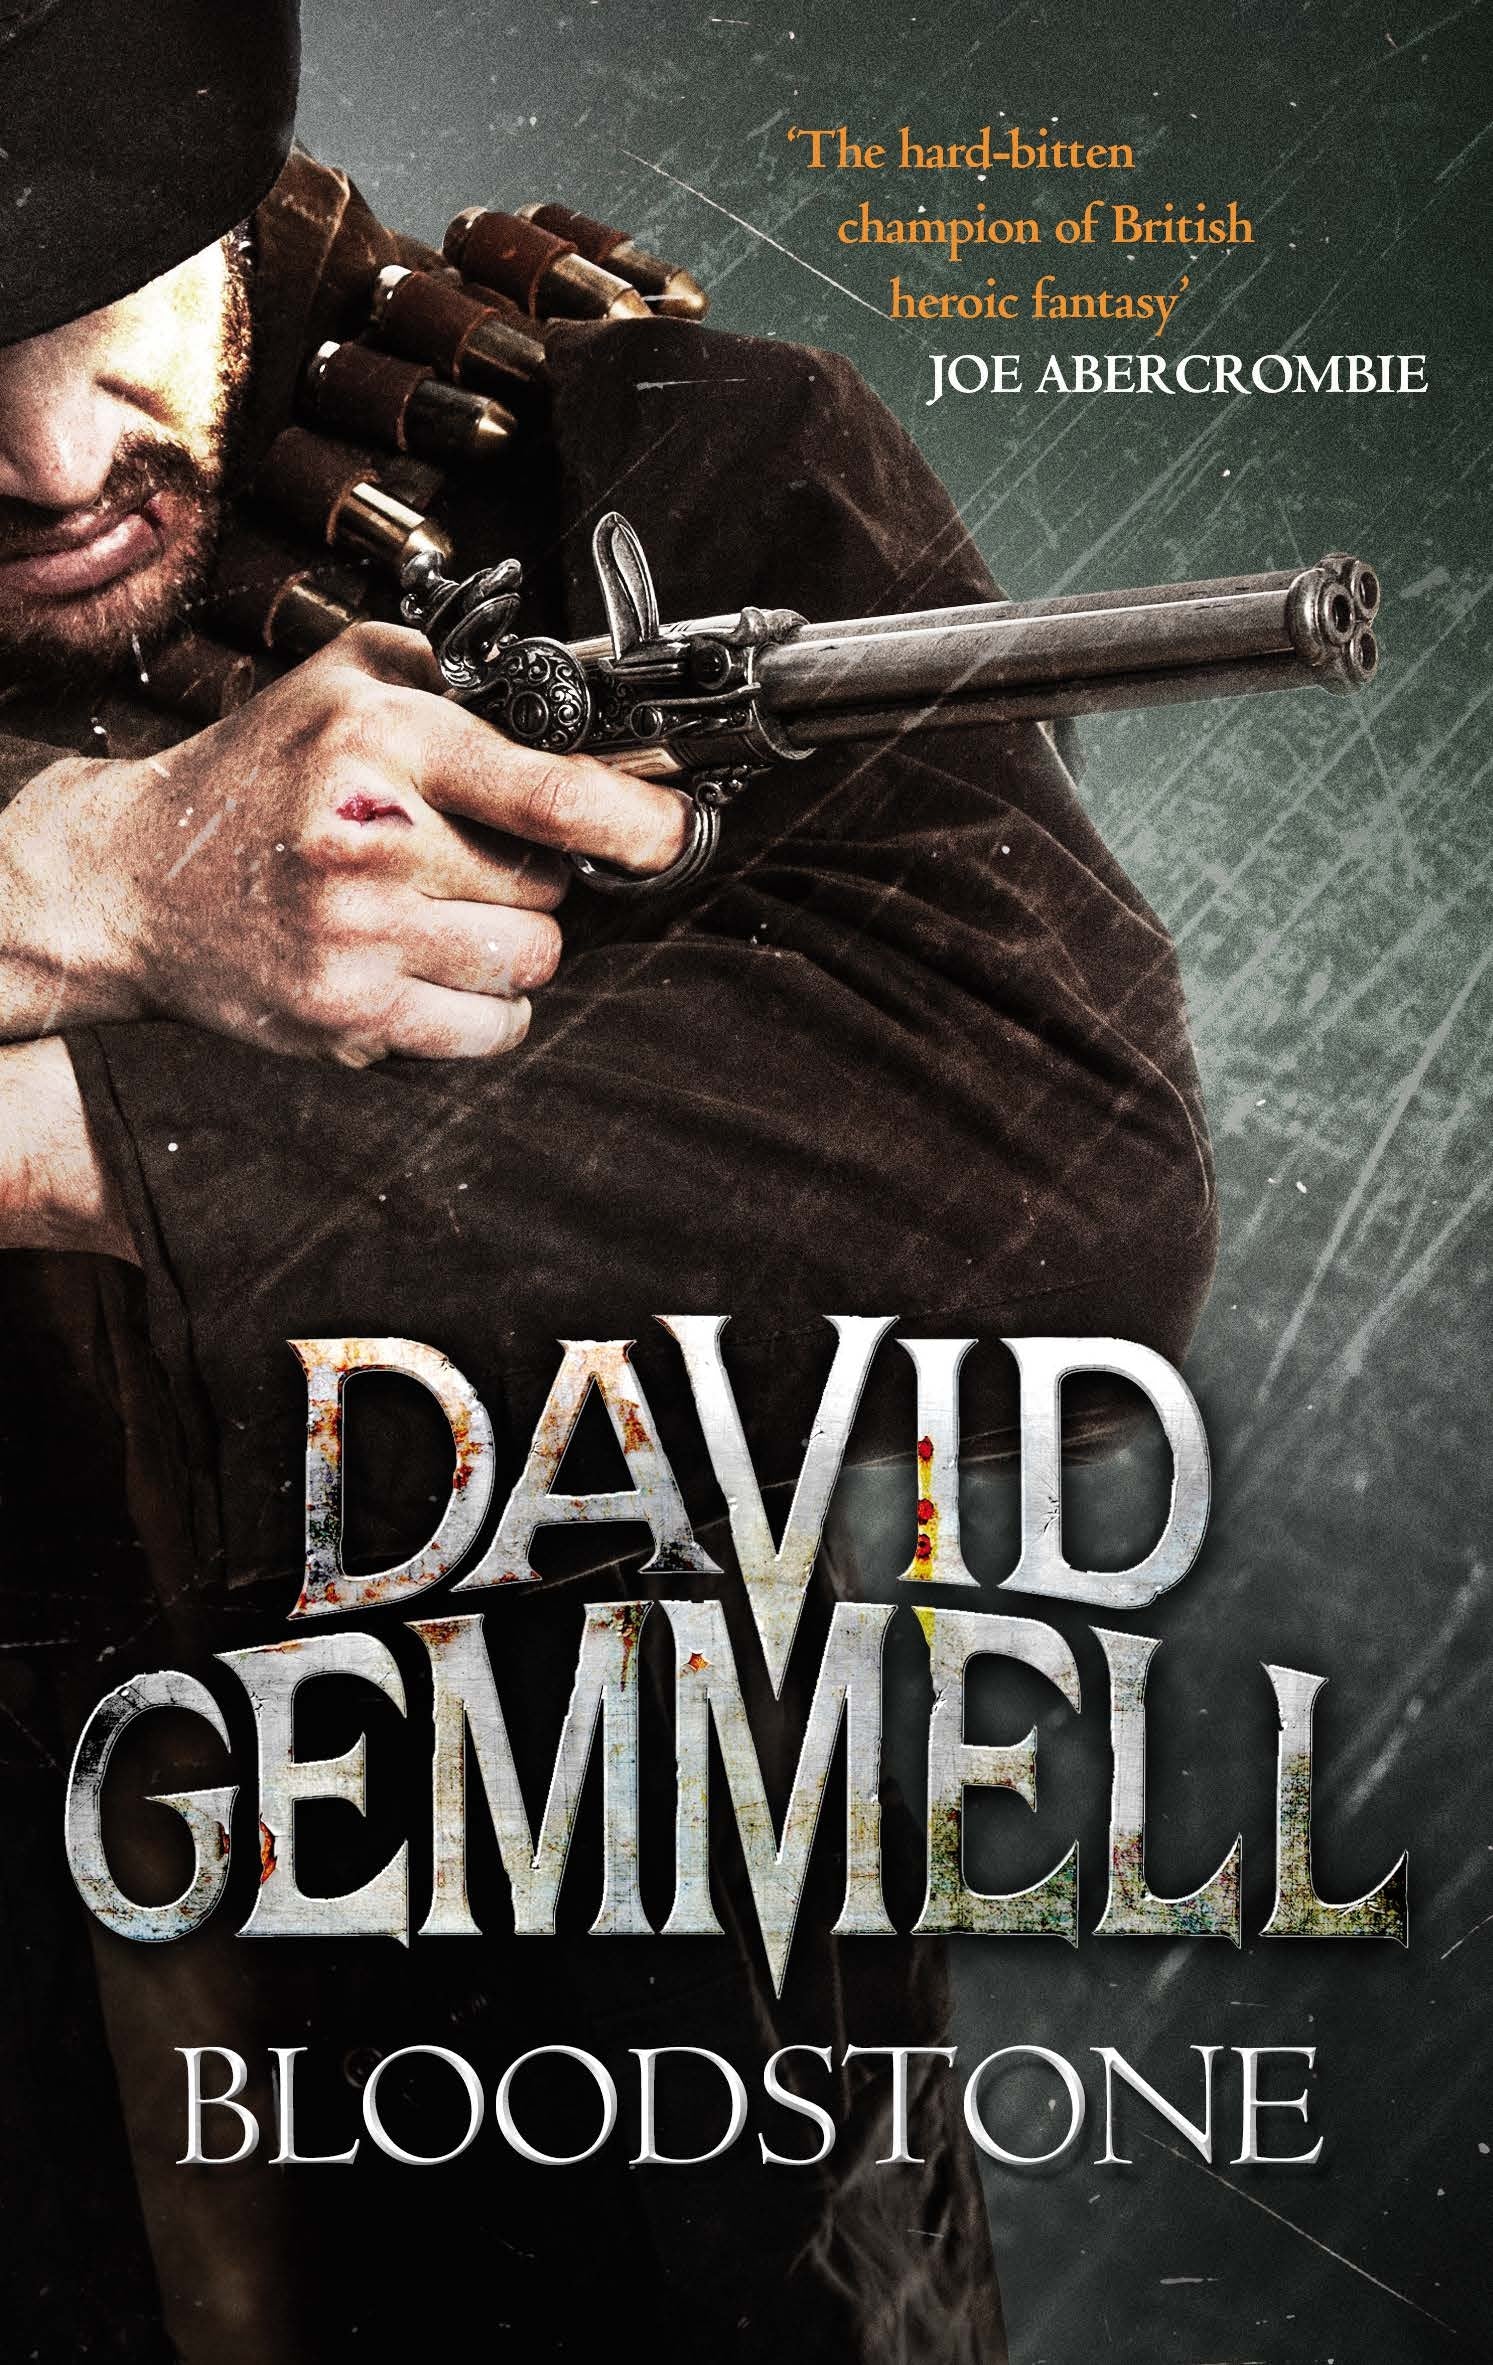 Bloodstone by David Gemmell